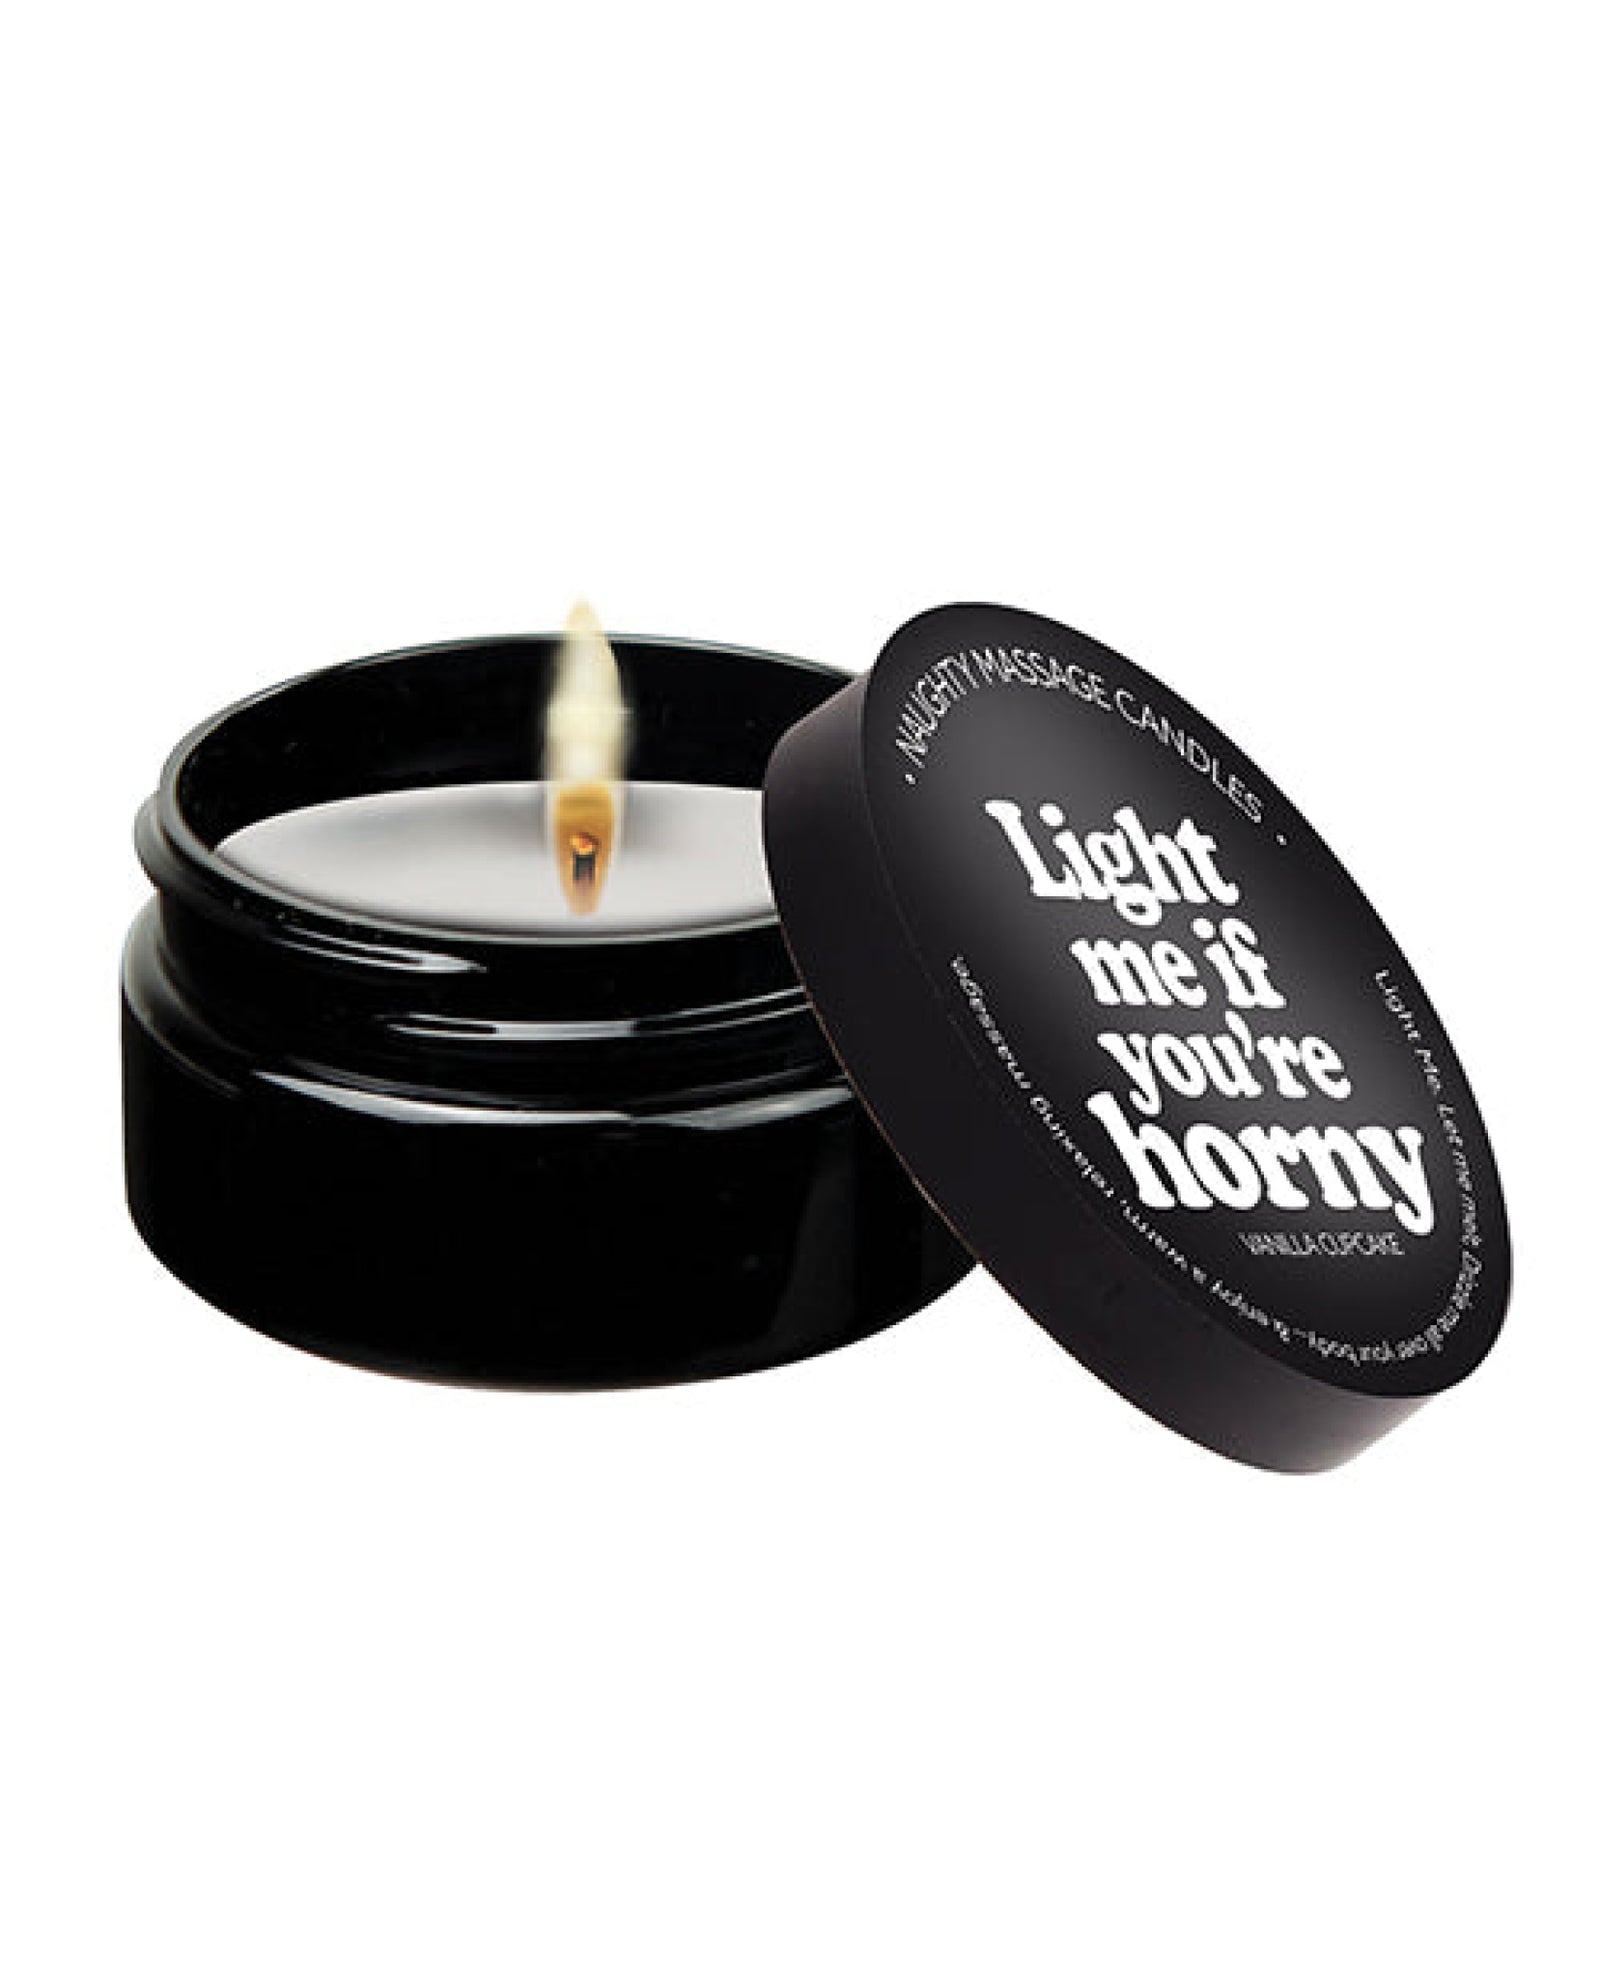 Kama Sutra Mini Massage Candle - 2 Oz Light Me If You're Horny Kama Sutra